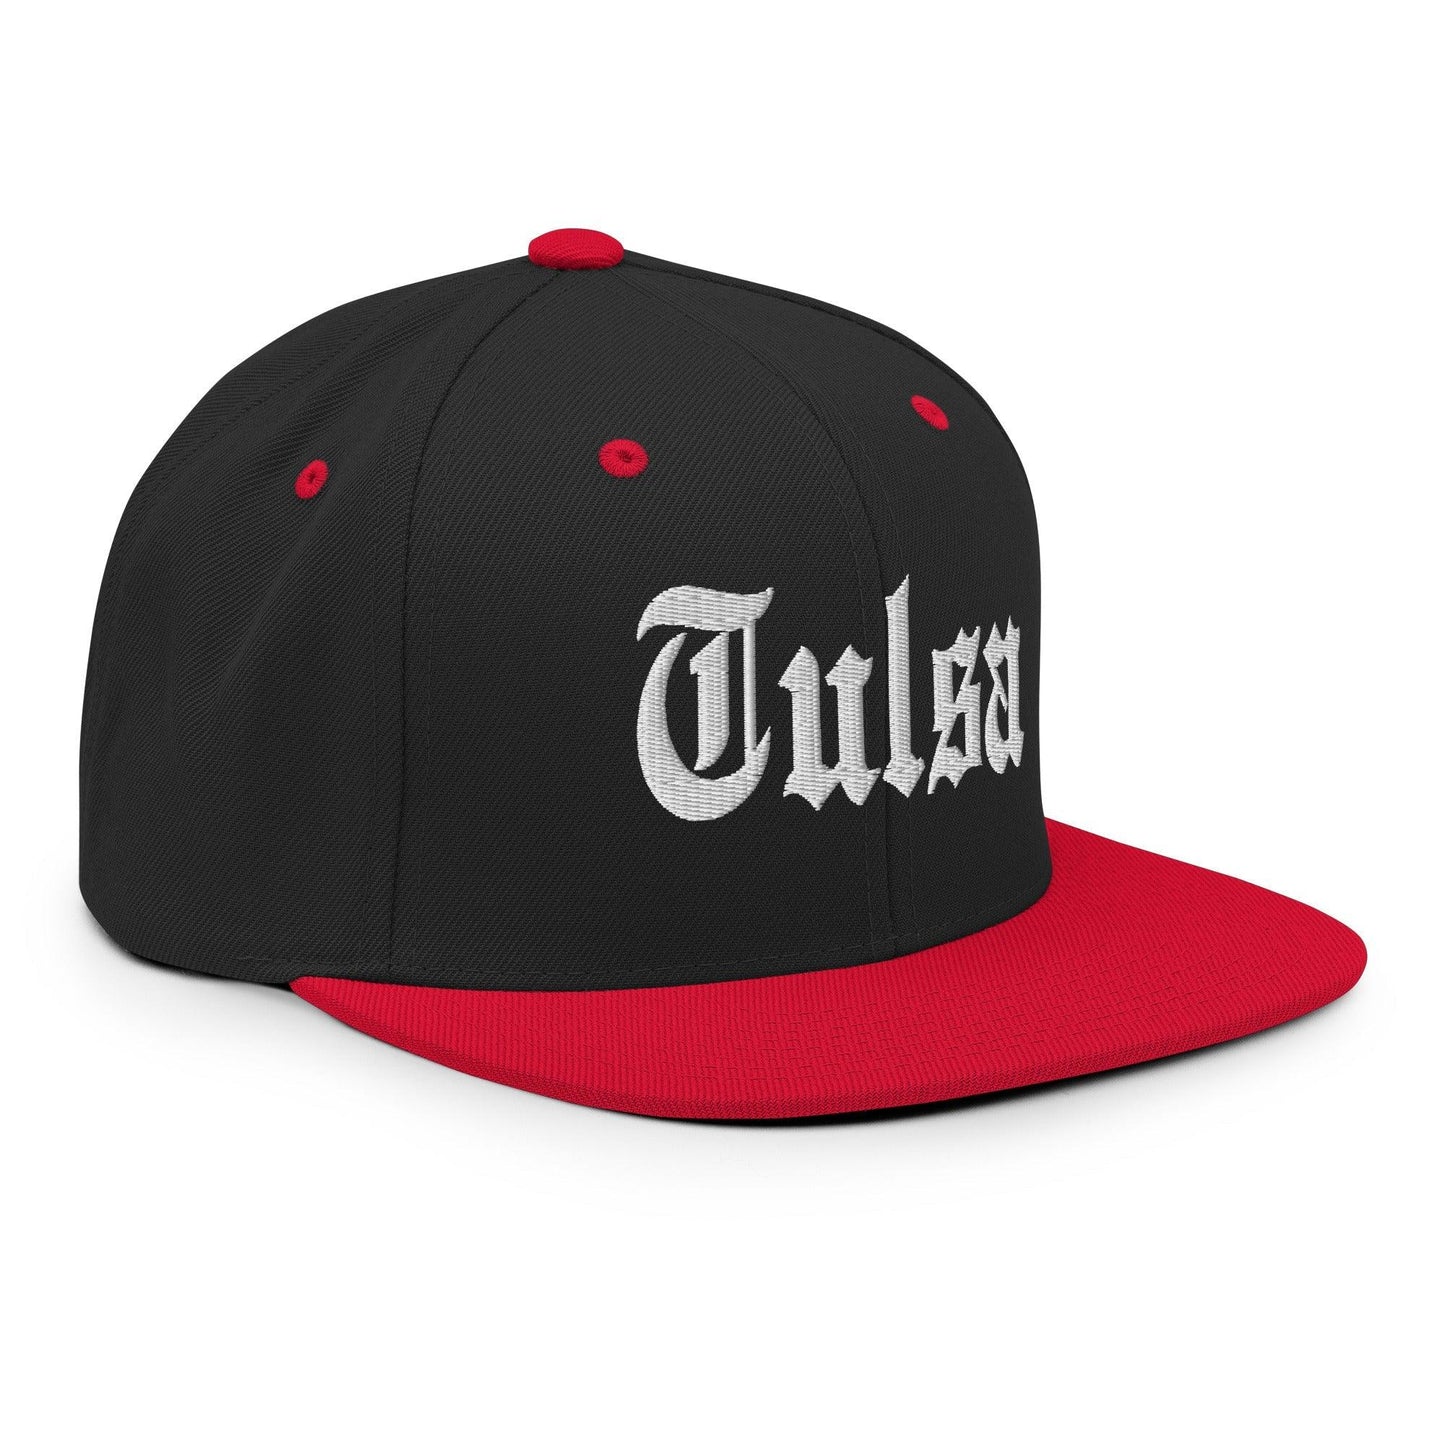 Tulsa OG Old English Snapback Hat Black Red